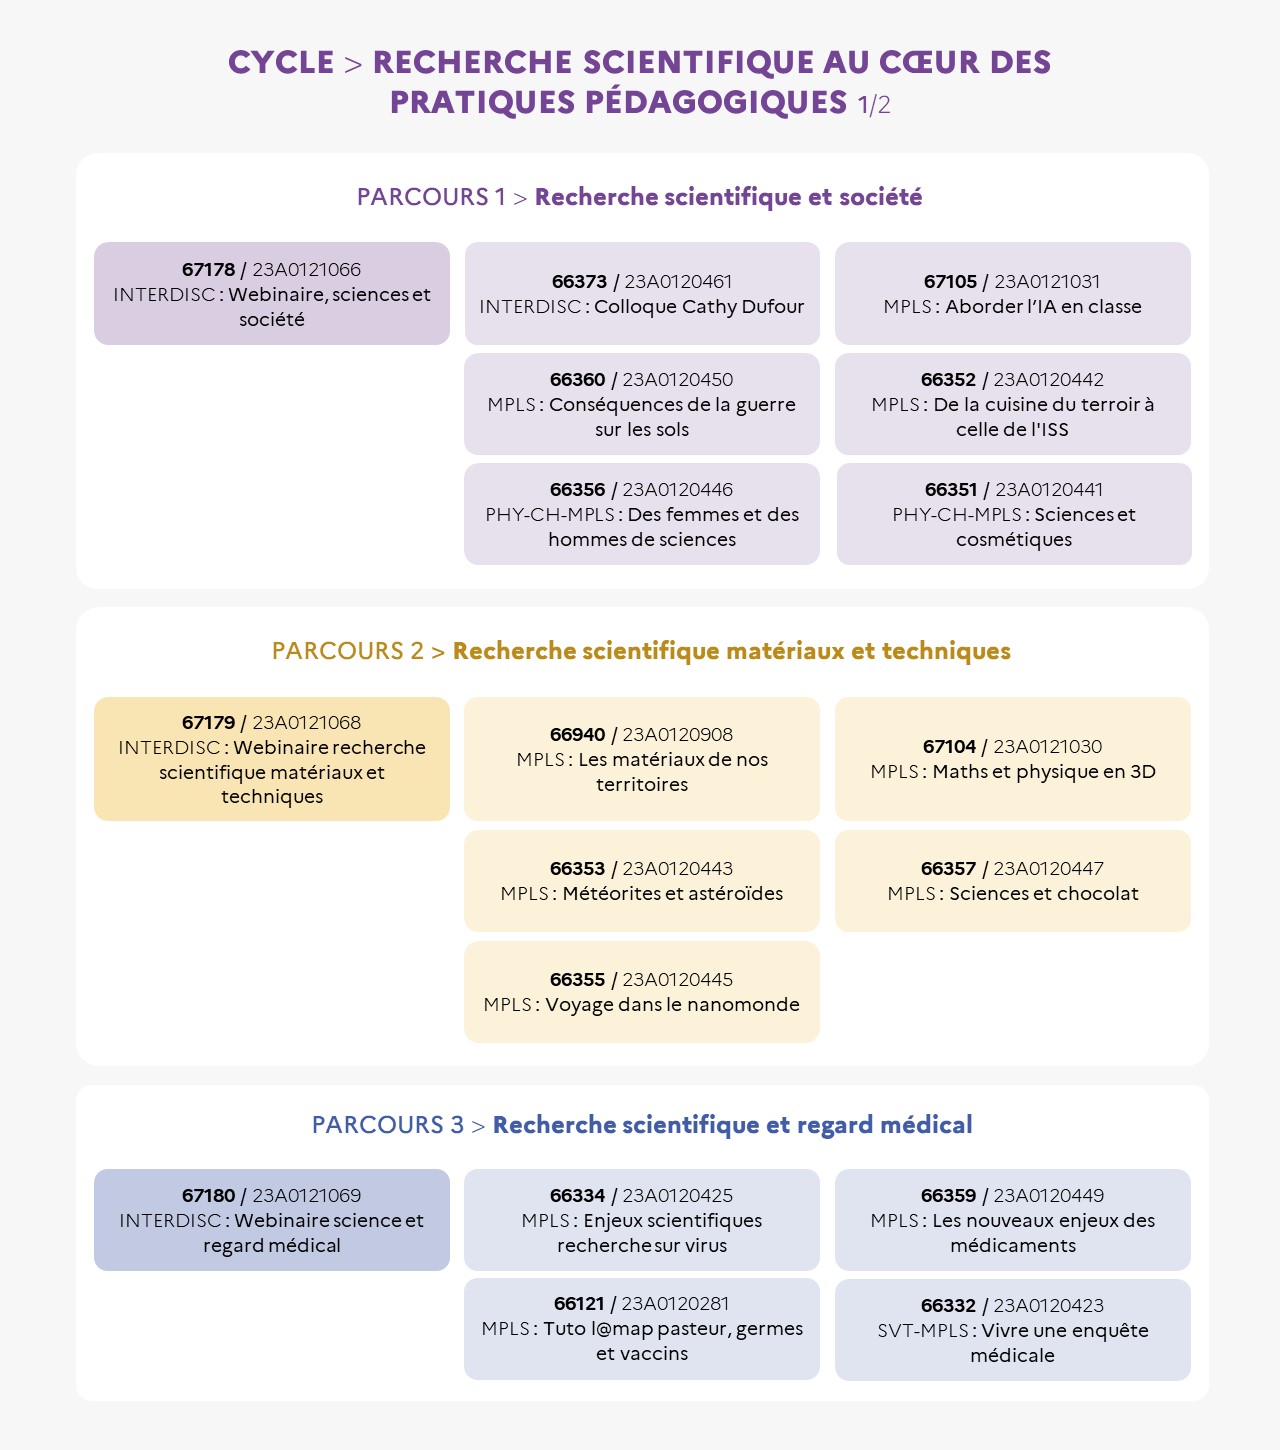 EAFC-Infographie1-RechercheScientifiqueAuCoeurDesPratiquesPedagogiques